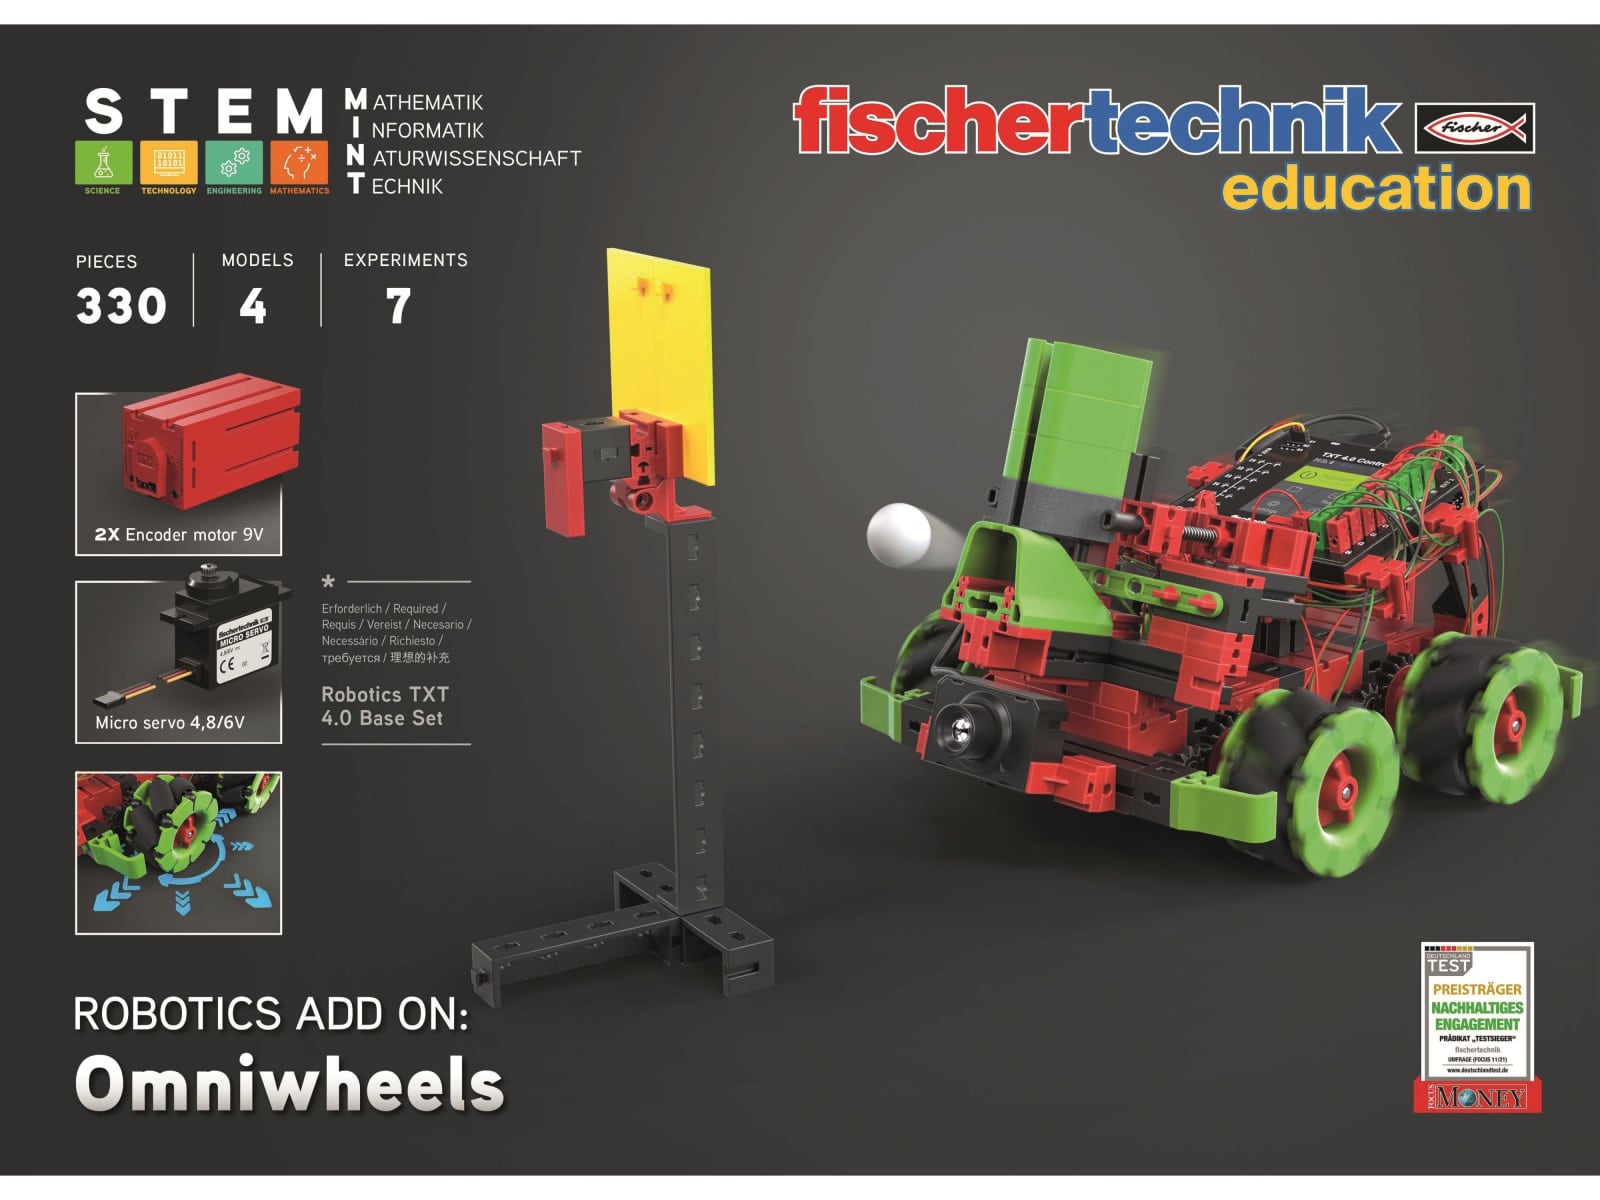 FISCHERTECHNIK Education, 559898, ROBOTICS Add On: Omniwheels